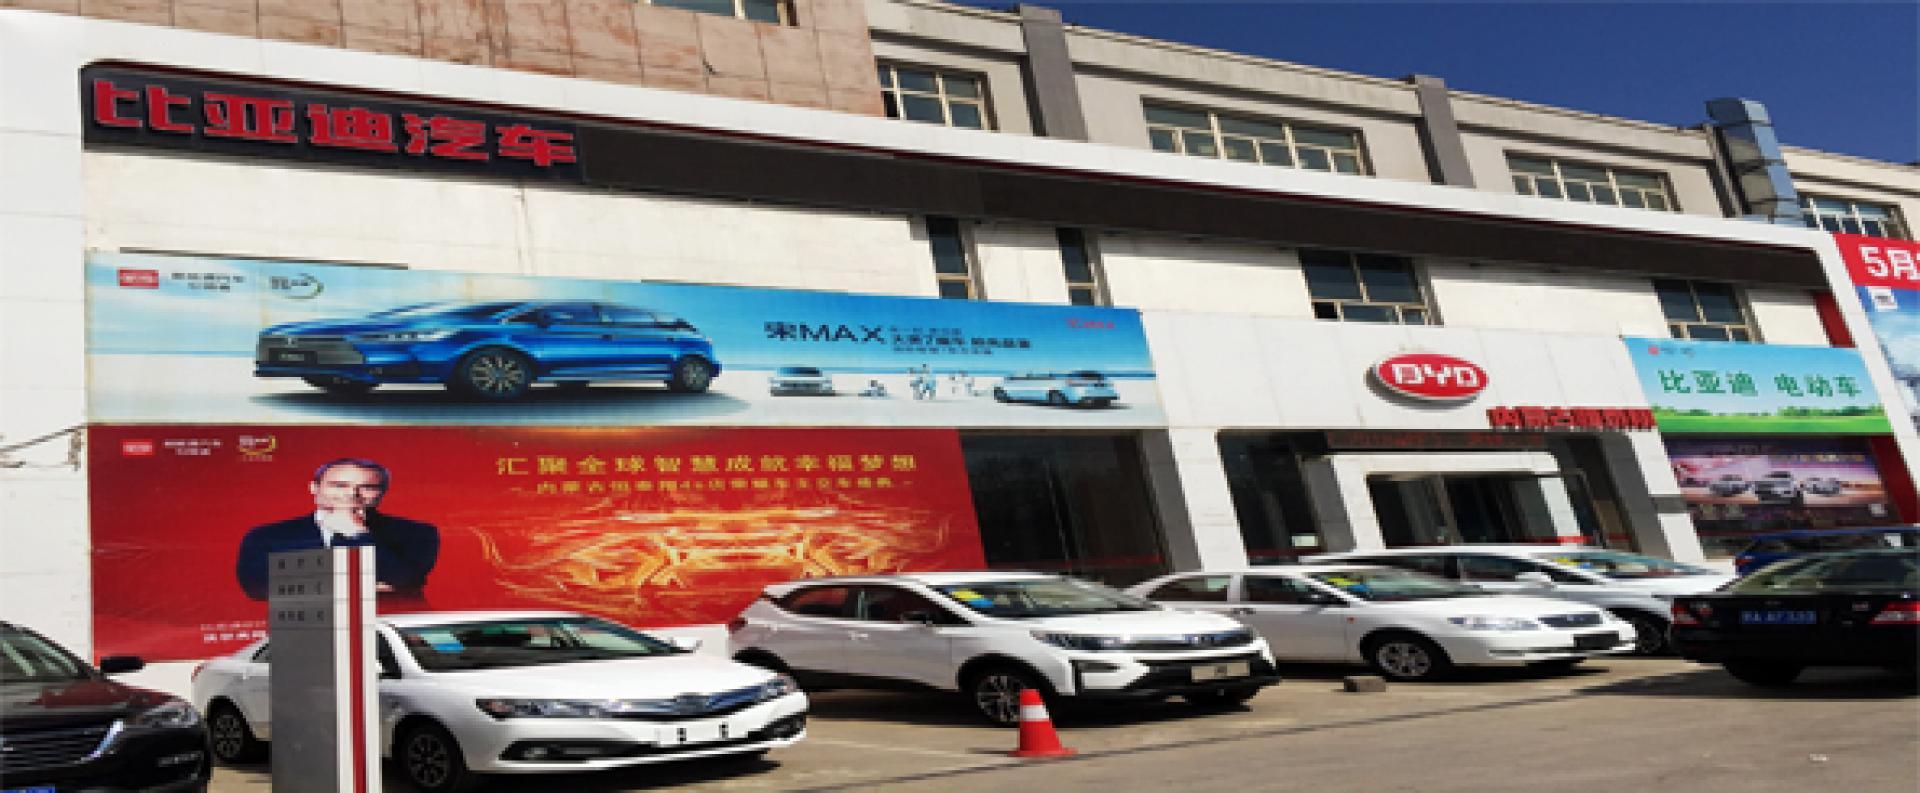 内蒙古恒泰翔汽车销售服务有限公司